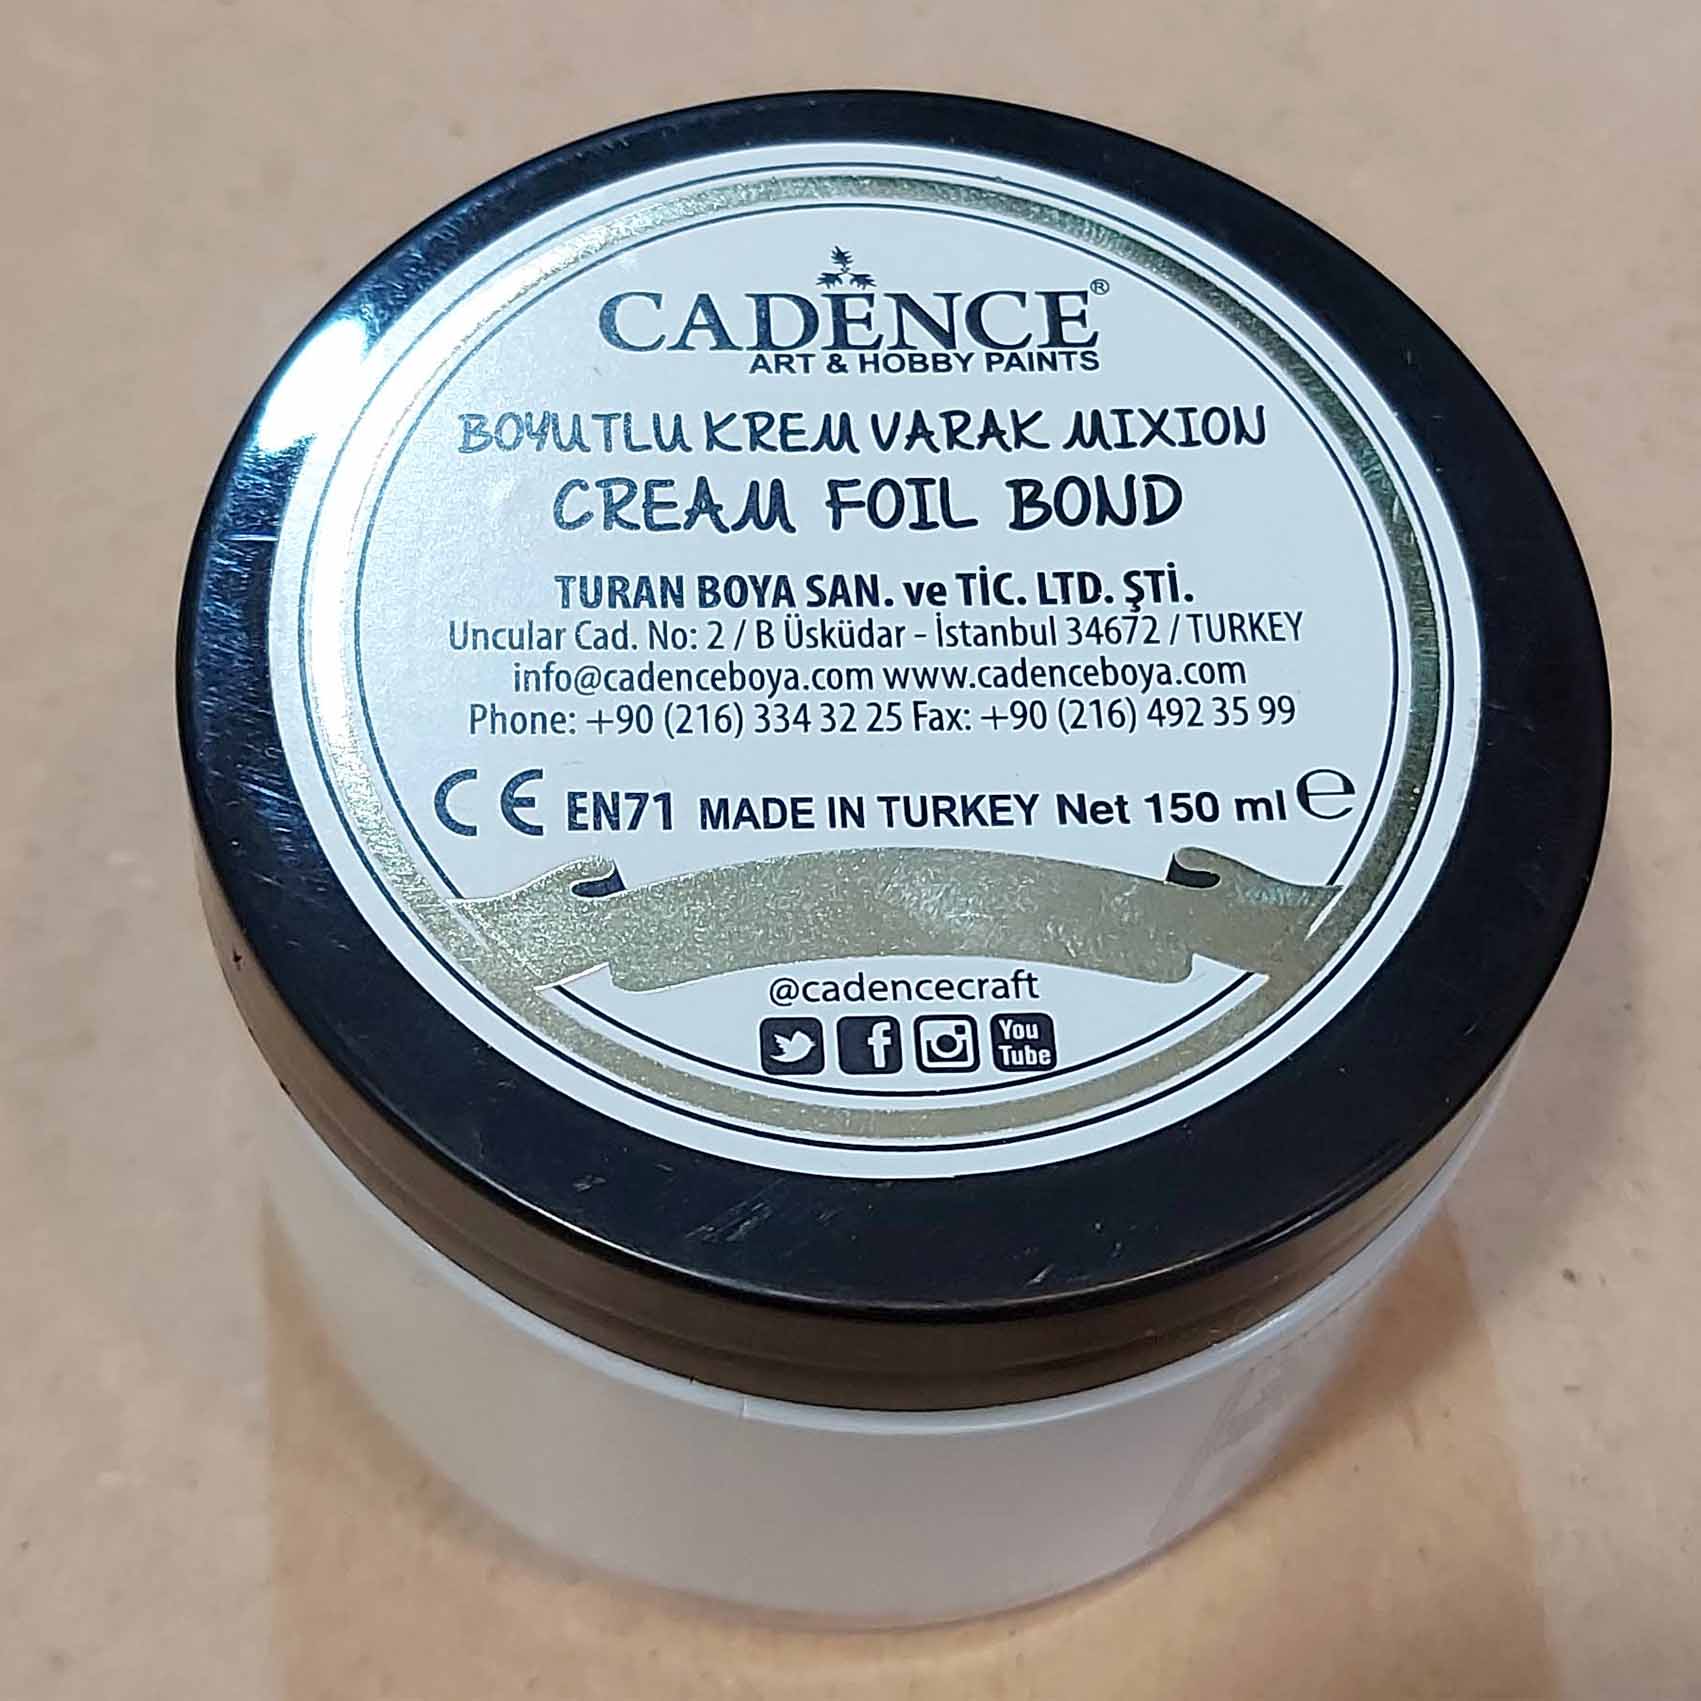 Cadence Cream Foil bond Abc creative art